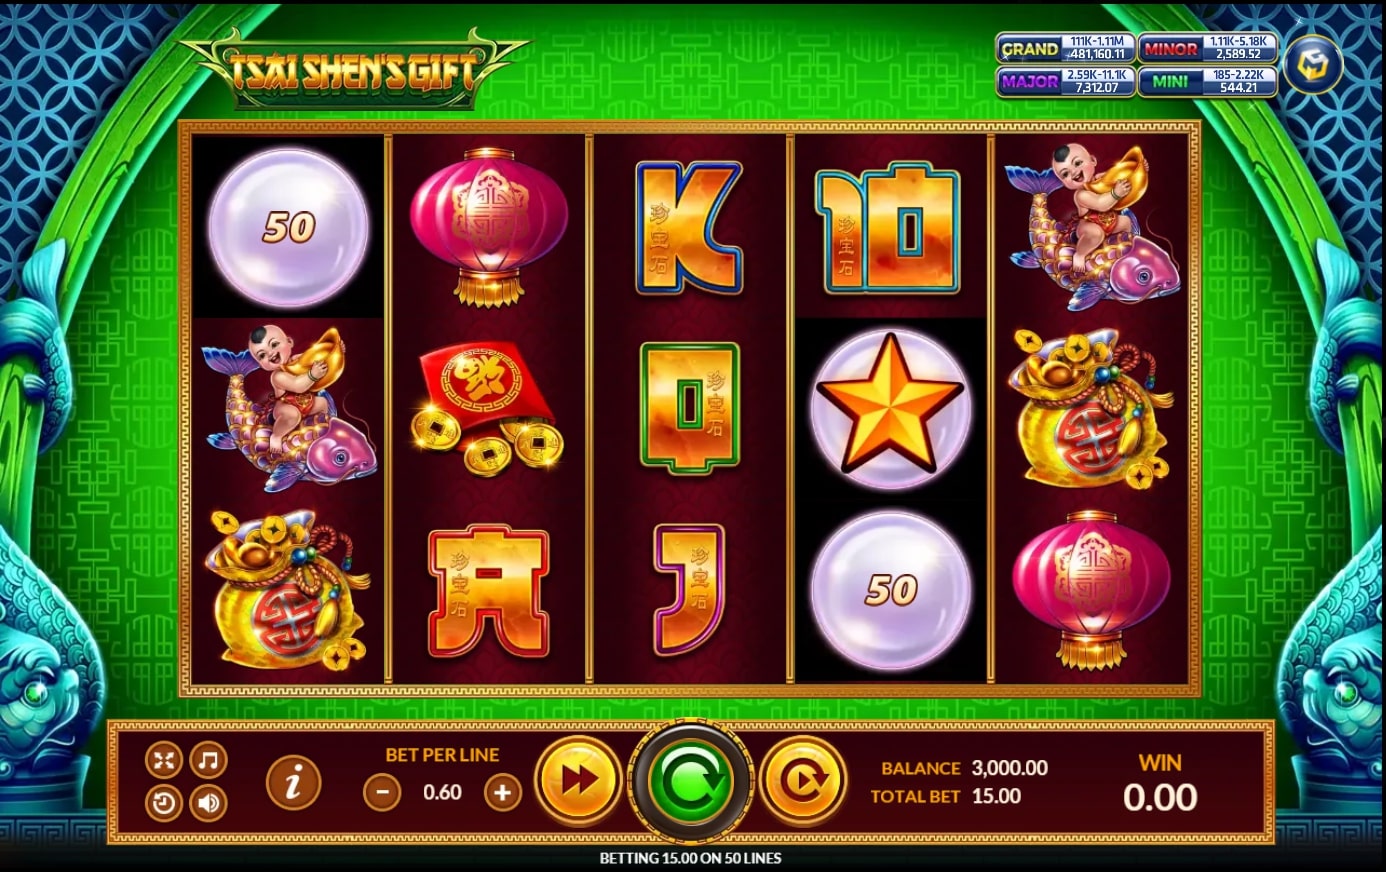 XO เว็บตรงไม่ผ่านเอเย่นต์สัญลักษณ์ของเกม Tsai Shen's Gift Slot Games